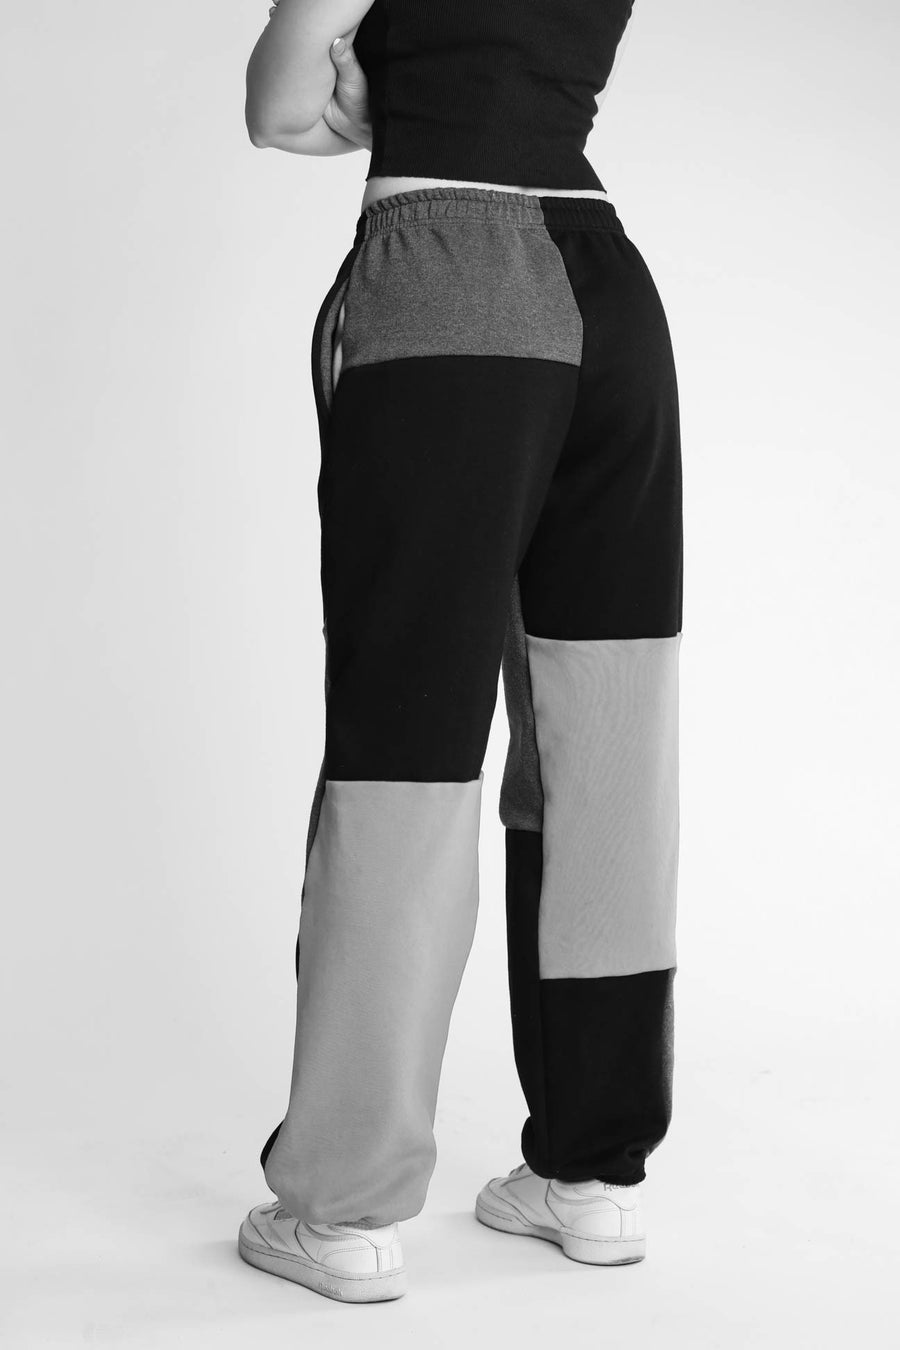 Unisex Rework North Face Patchwork Sweatpants - Women-XS, Men-XXS